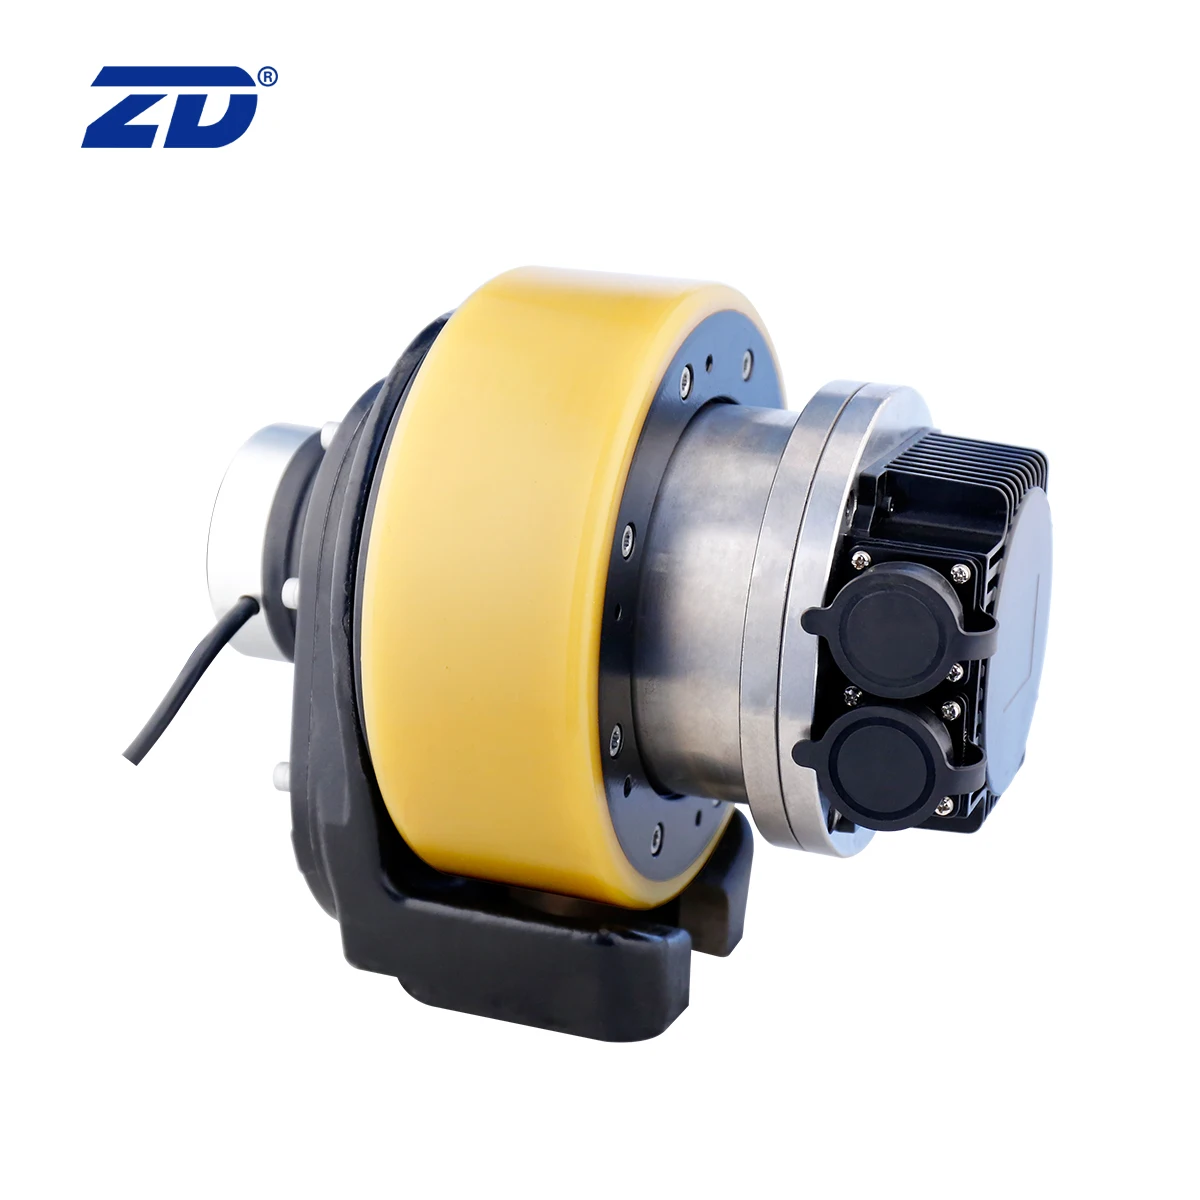 zd leader电动直流无刷功率1000w驱动轮电机,用于叉车和agv